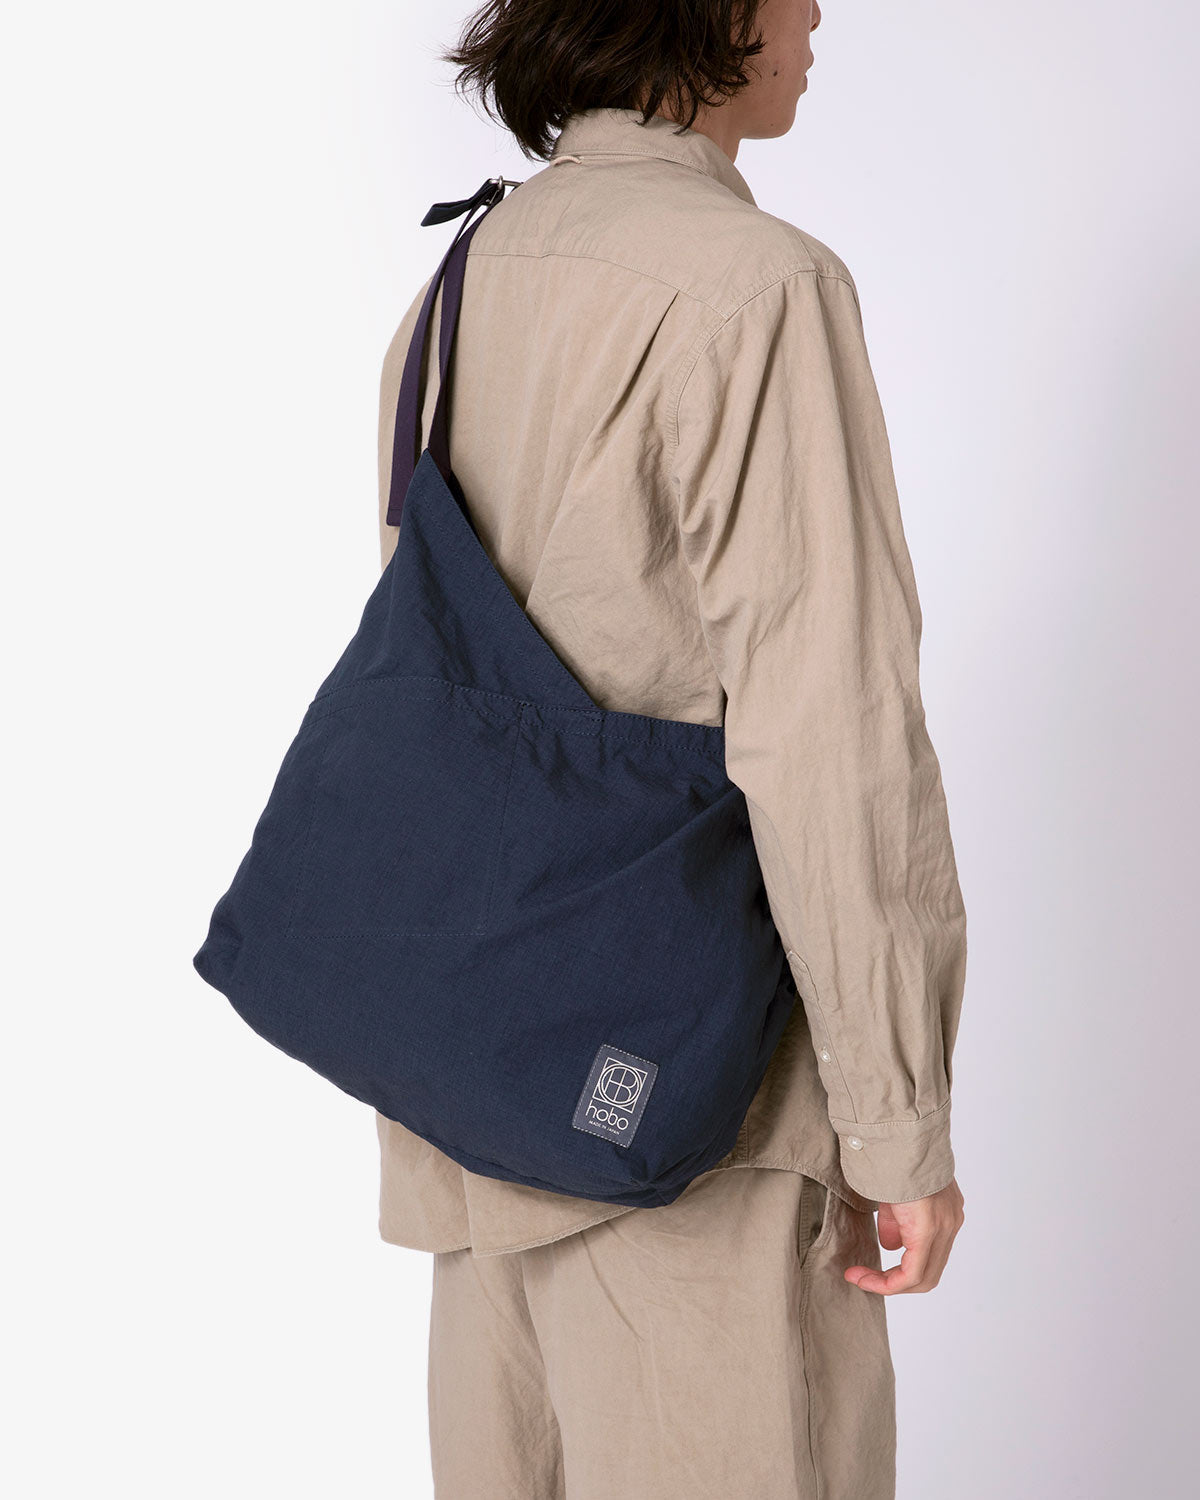 The Real McCoy's Eco Shoulder Bag